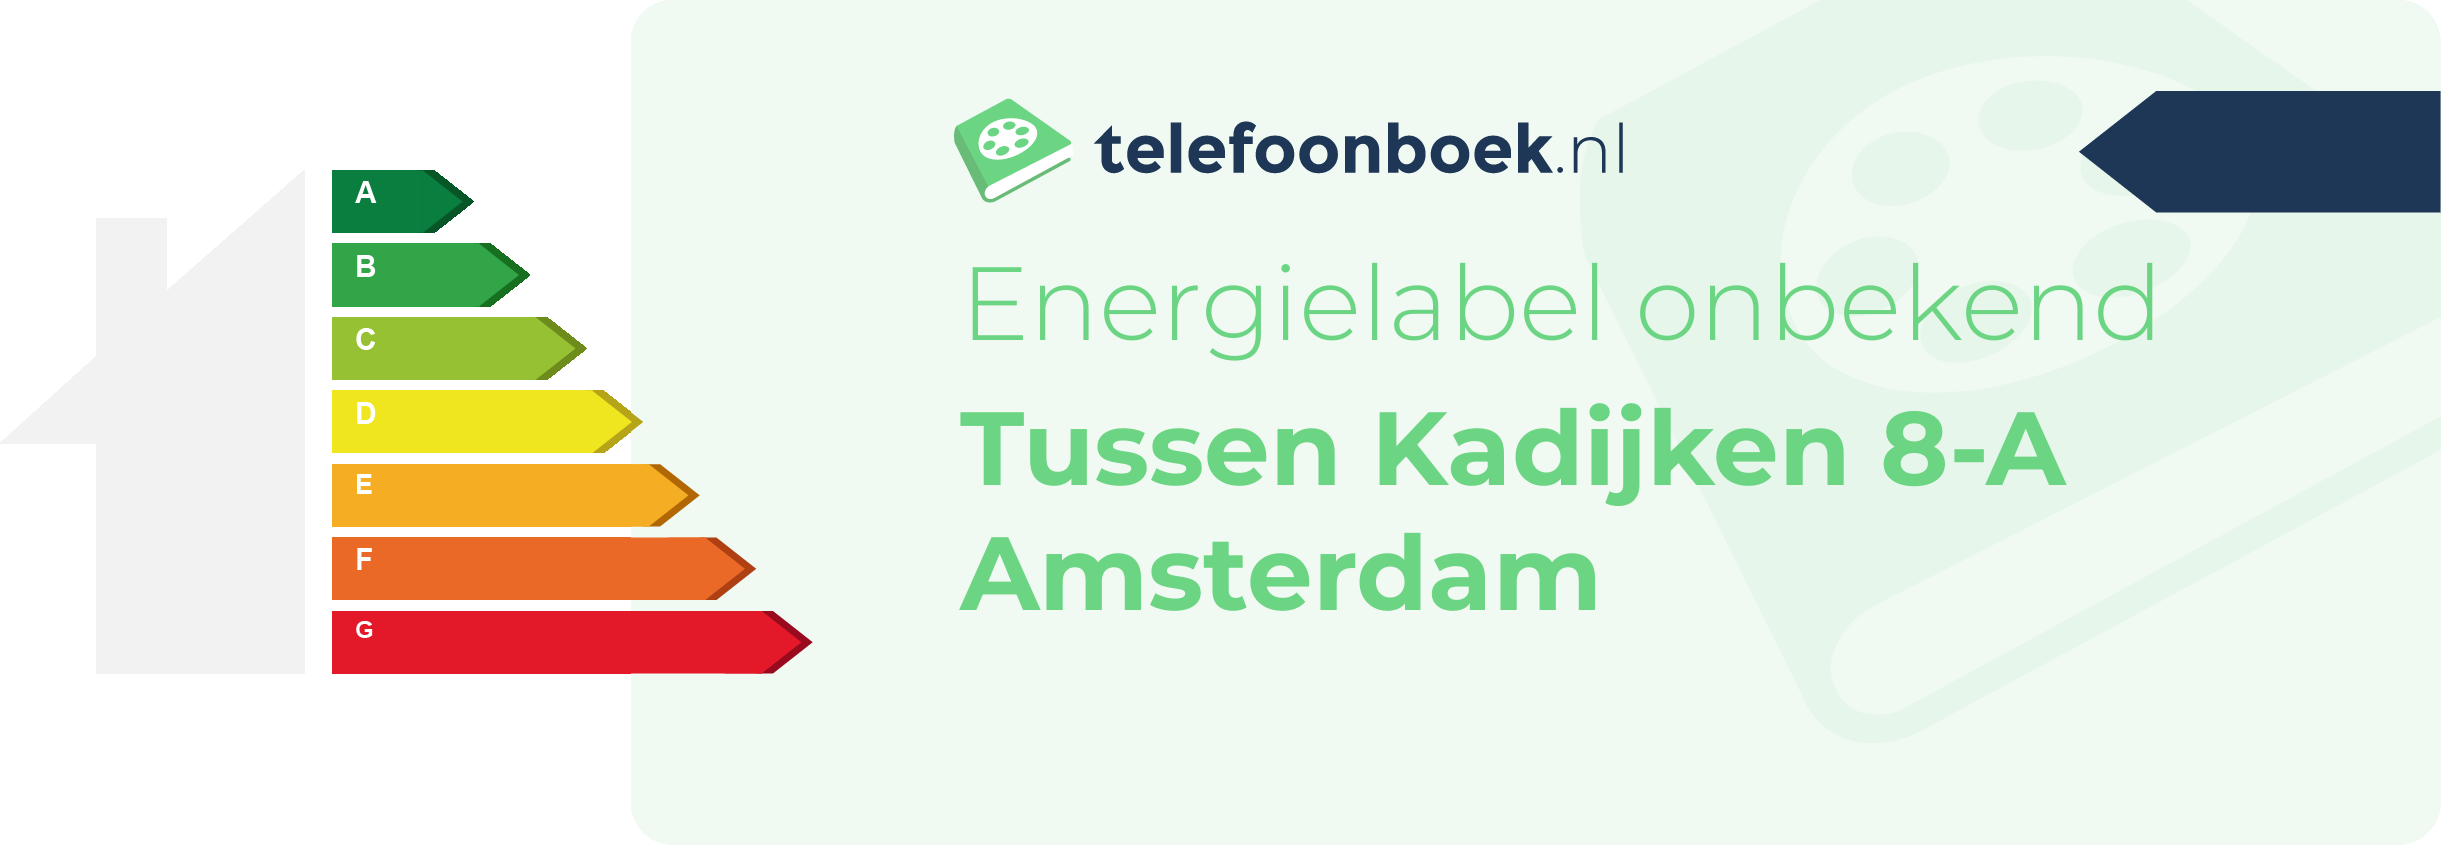 Energielabel Tussen Kadijken 8-A Amsterdam